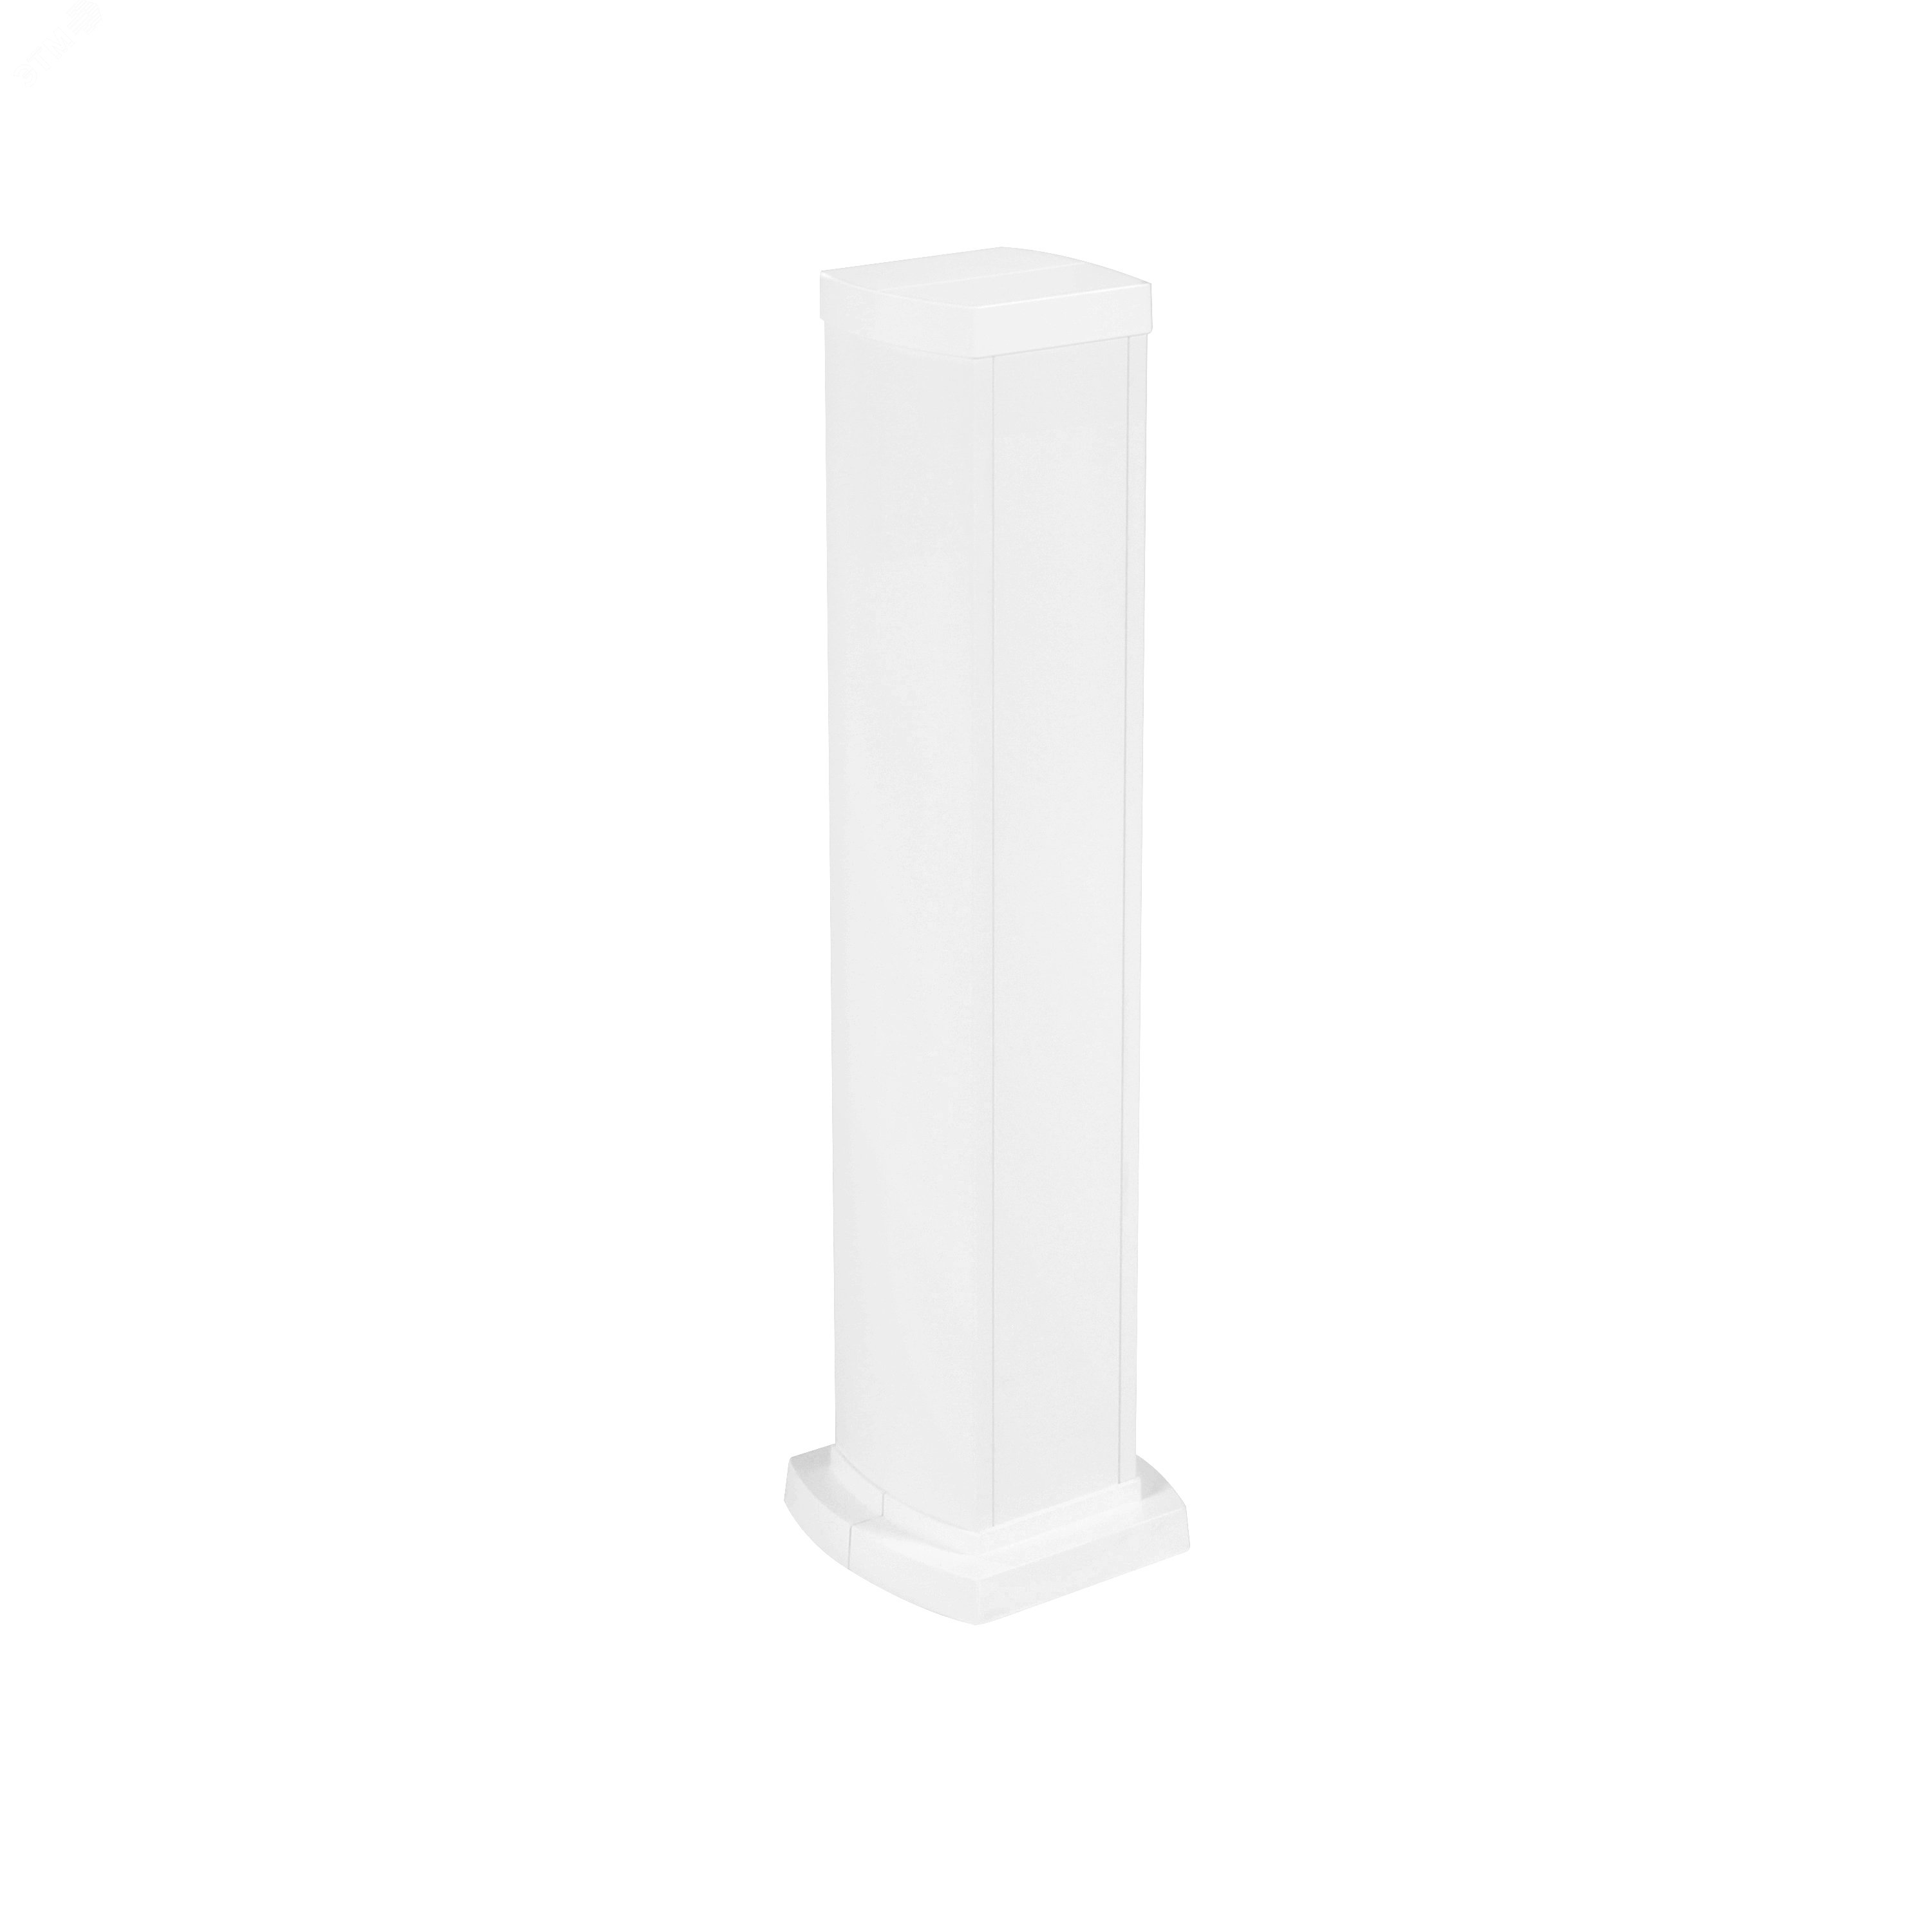 Универсальная мини-колонна алюминиевая с крышкой из алюминия 2 секции, высота 0,68 метра, цвет белый 653123 Legrand - превью 2